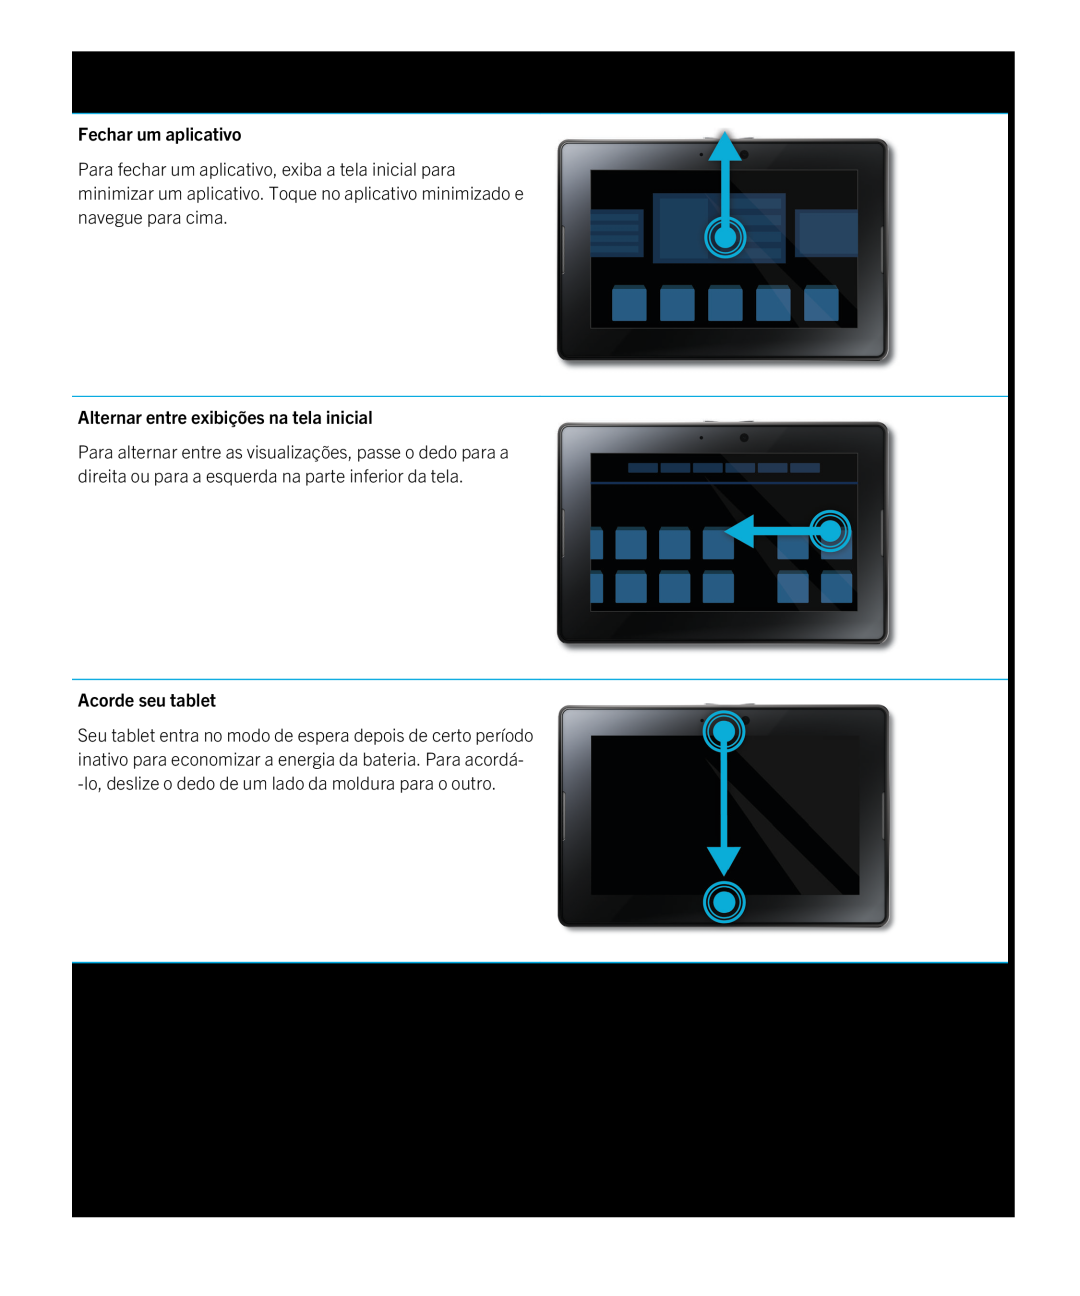 Blackberry 2.0.1 manual Fechar um aplicativo, Alternar entre exibições na tela inicial, Acorde seu tablet 